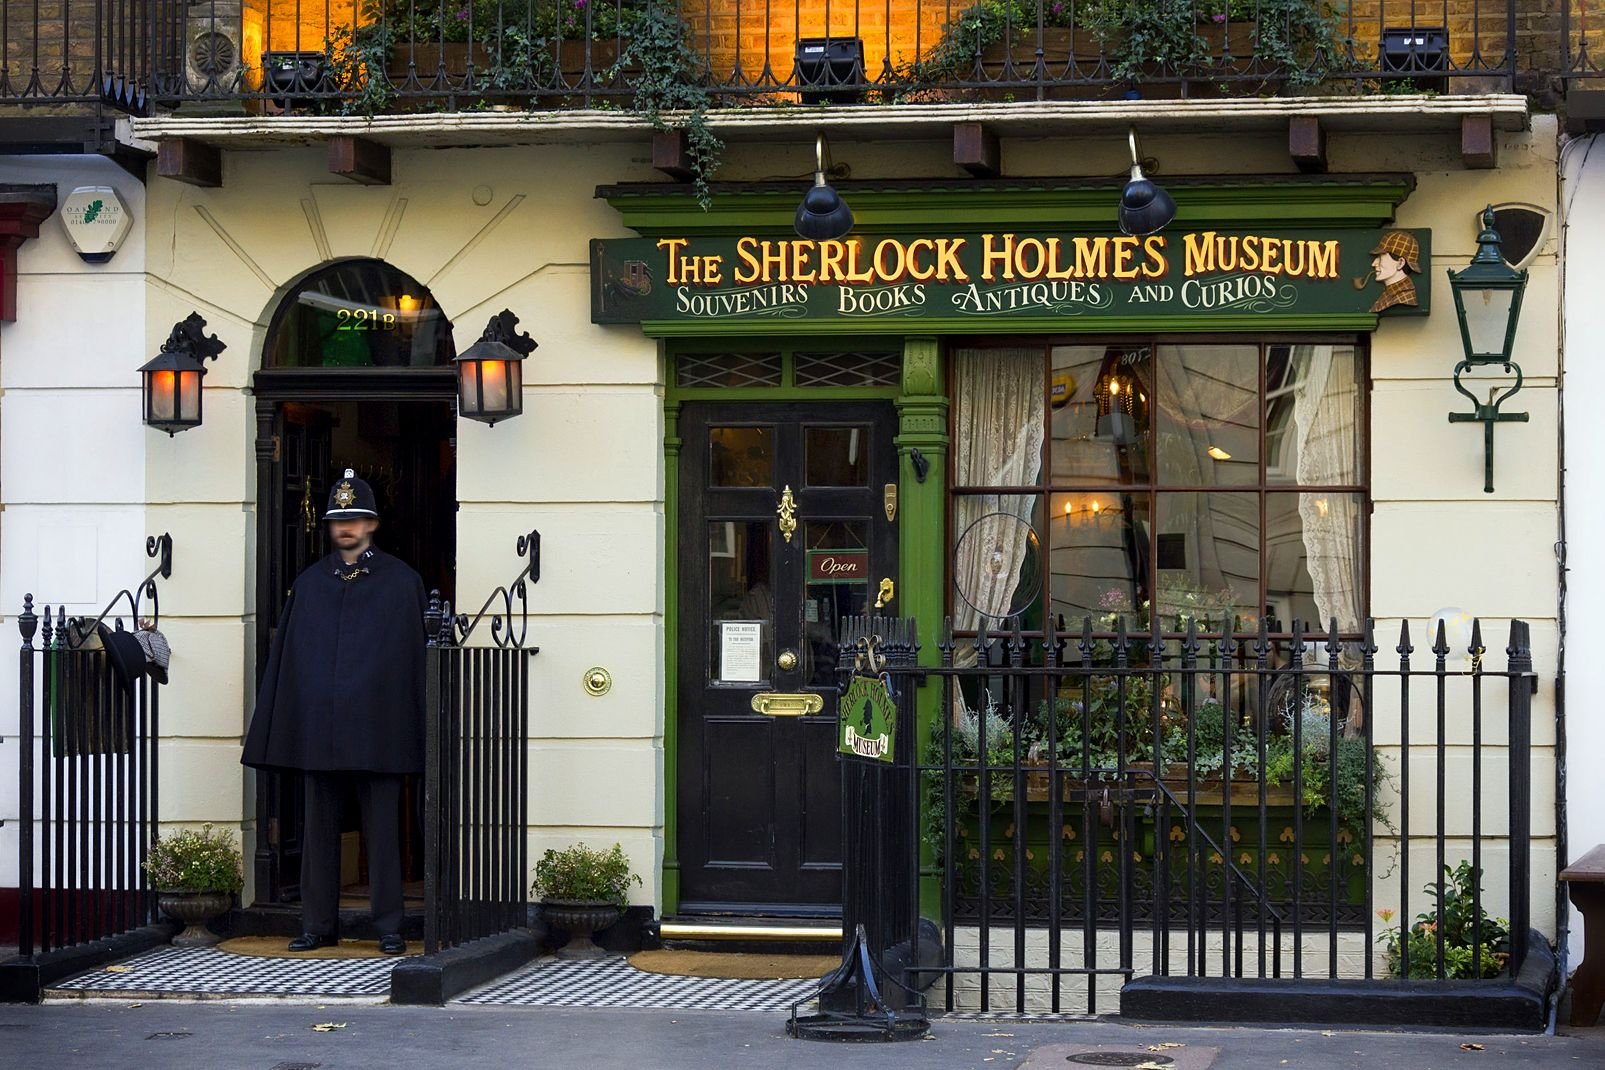 A Londres, Sherlock Holmes est une institution. Cela tient probablement au fait qu'à l'époque de son apparition dans la littérature anglaise, fin XIXème siècle, ce personnage doté de capacités hors du commun qui font de lui un génie, apparut comme une invention extraordinaire. Son univers unique a son musée situé au 221 Baker Street, à l'adresse même où le personnage habite dans les romans et nouvelles.